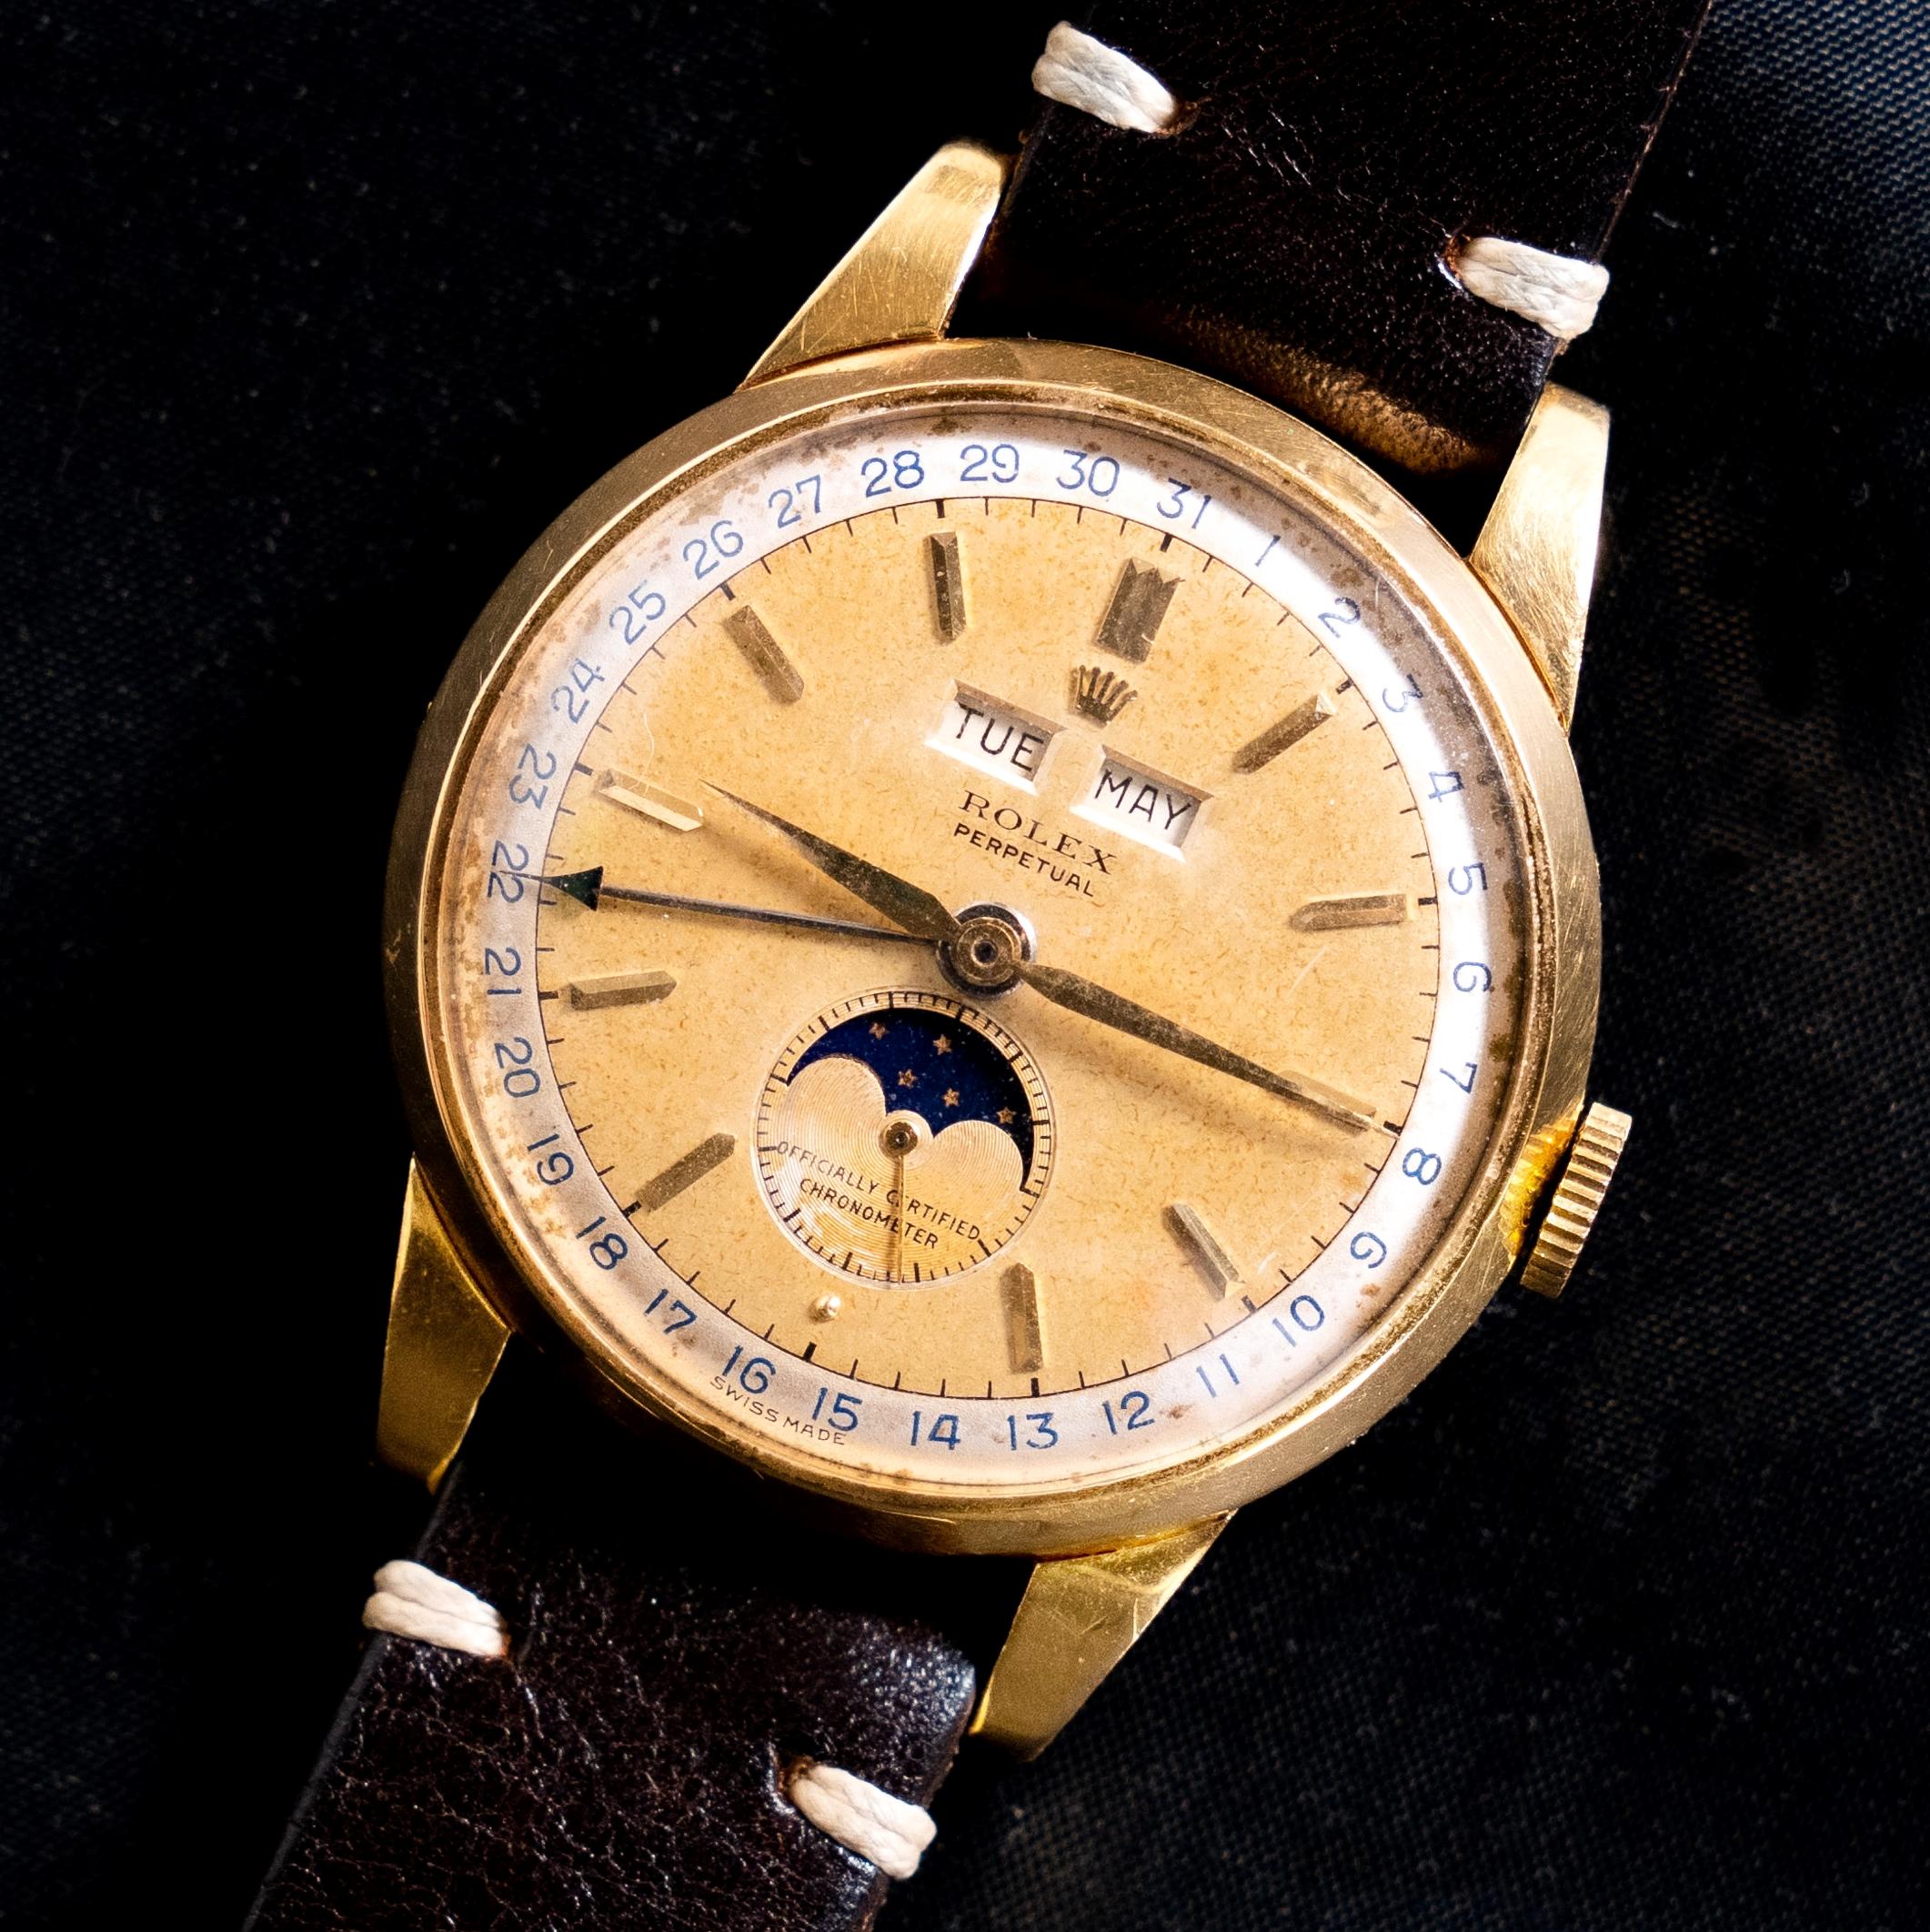 Marke: Vintage By Rolex
Modell: 8171
Jahr: 1950
Seriennummer: 71xxxx
Referenz: OT1852

Die Rolex Referenz 8171, die für einen kurzen Zeitraum von 1949 bis 1952 hergestellt wurde, ist einer der kompliziertesten Zeitmesser von Rolex. Neben der